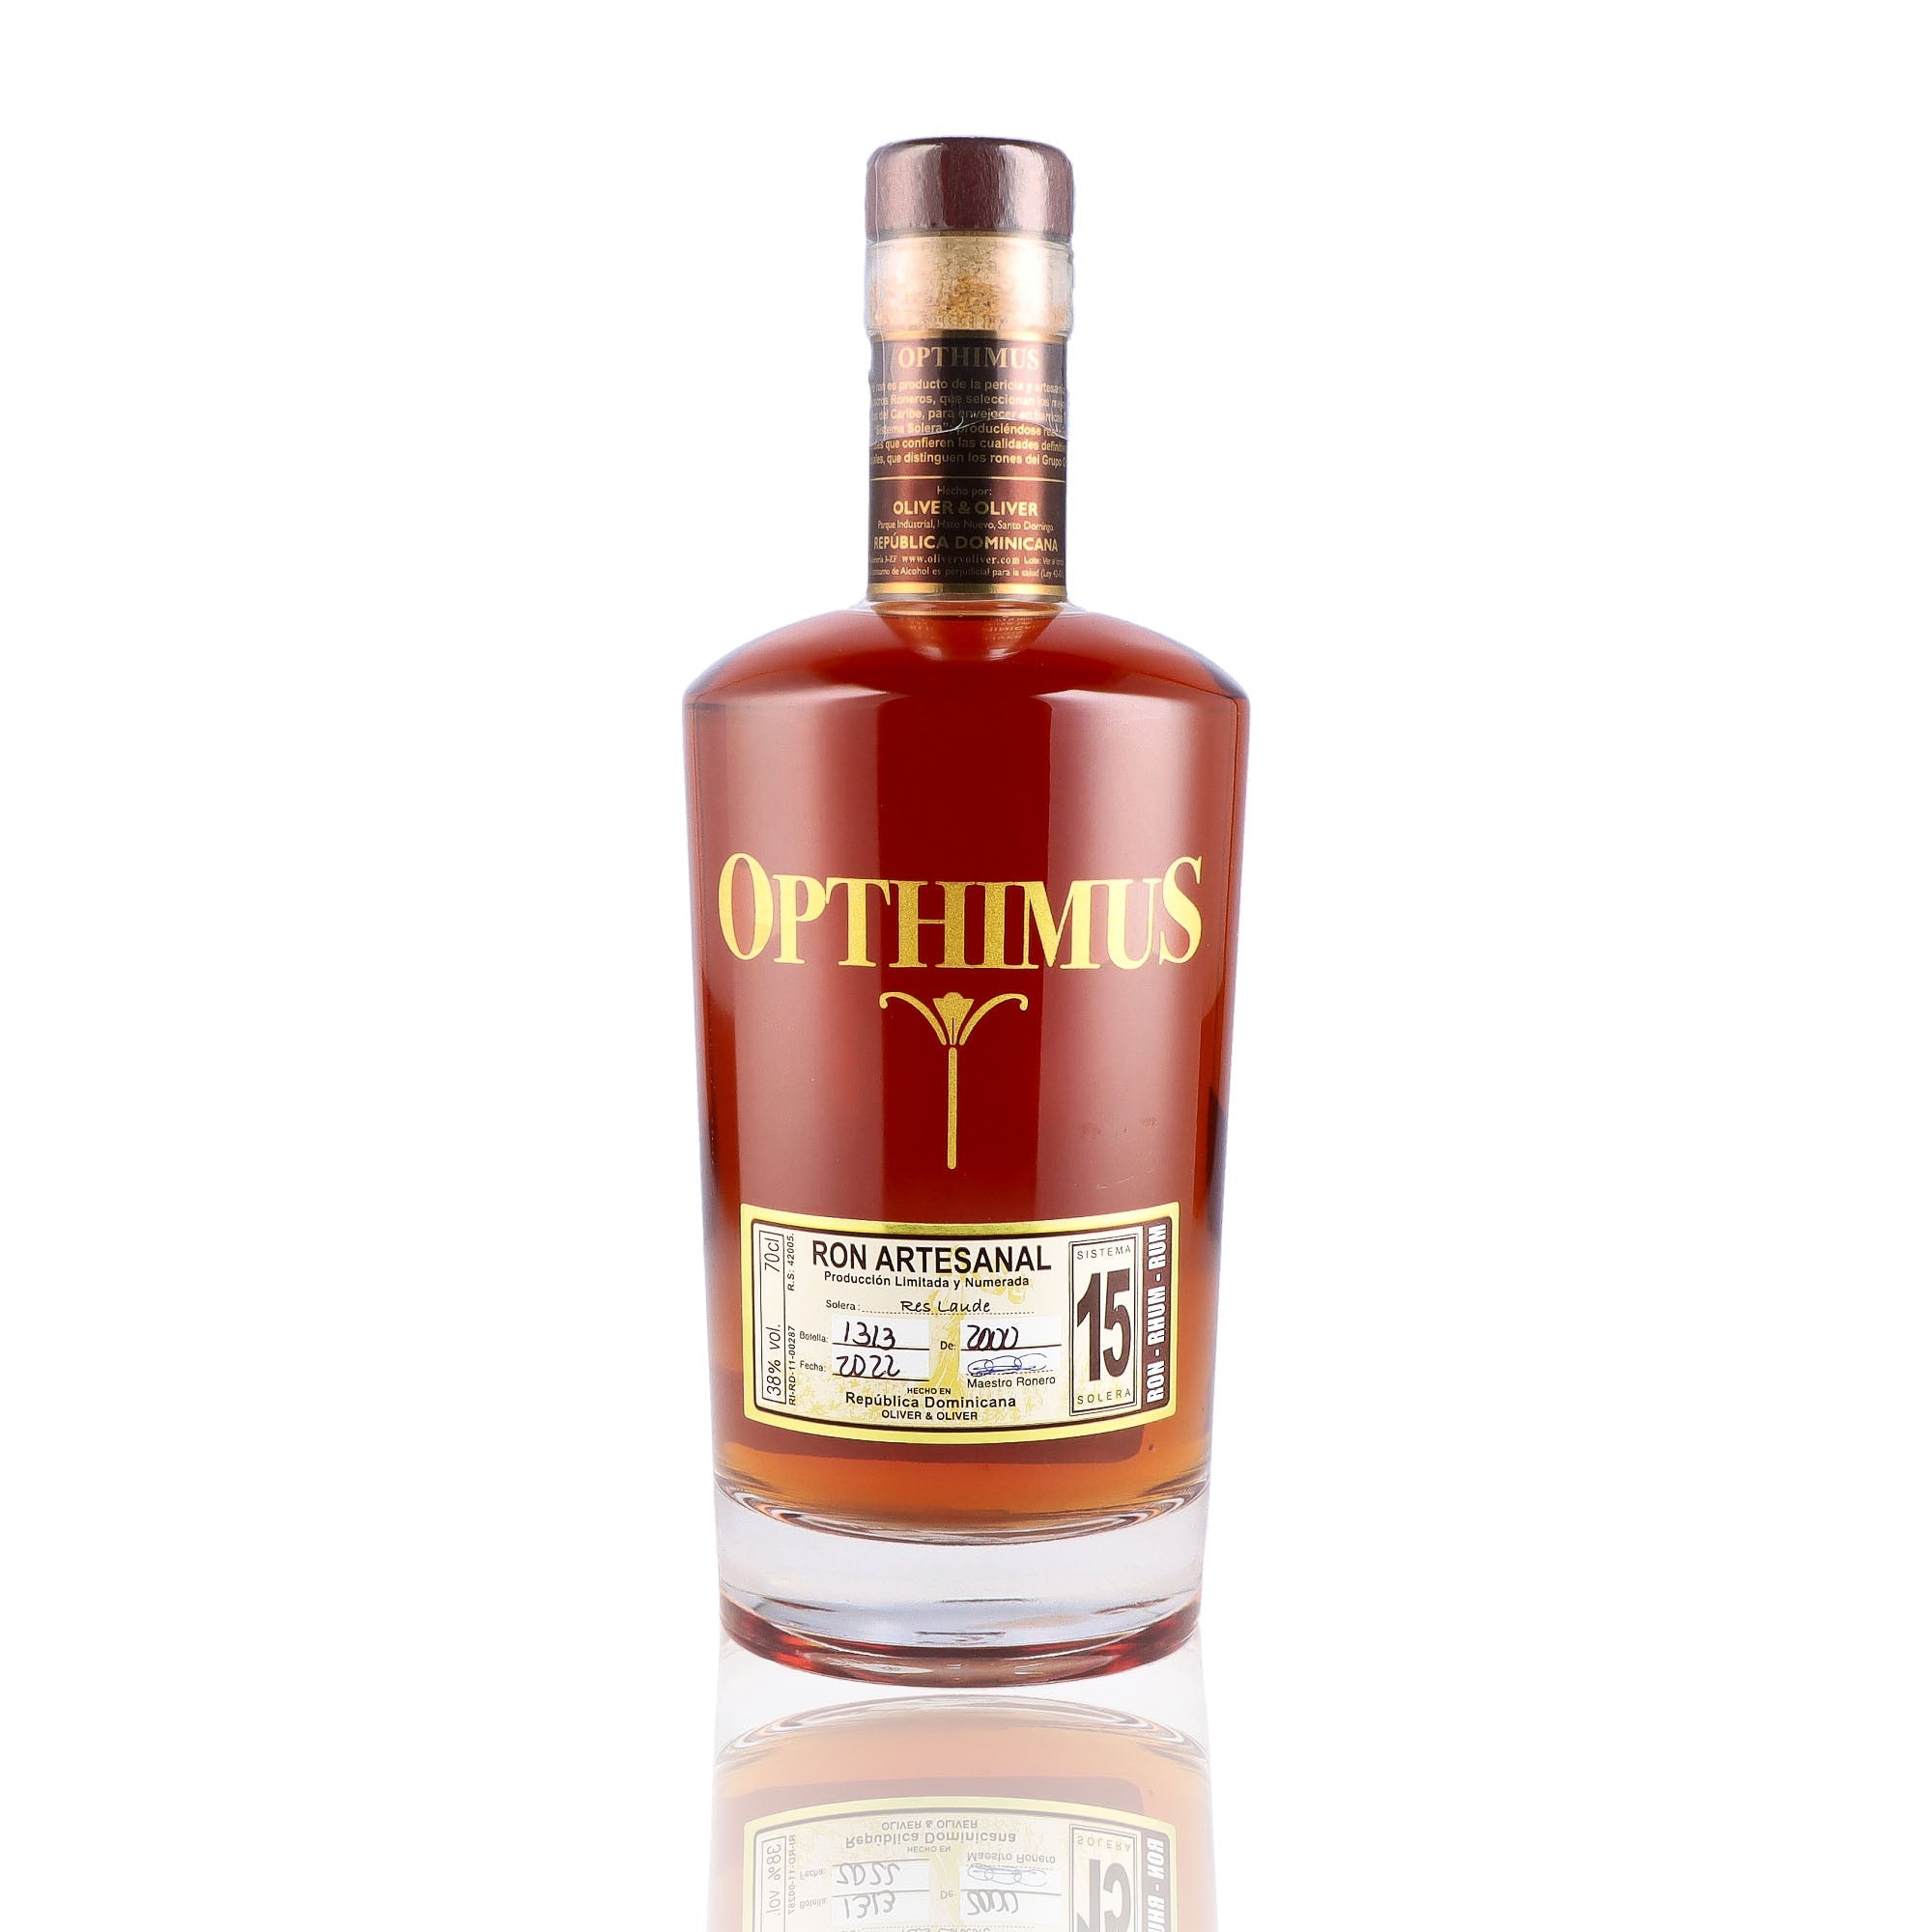 Une bouteille de rhum vieux, de la marque Opthimus, 15 ans d'âge.